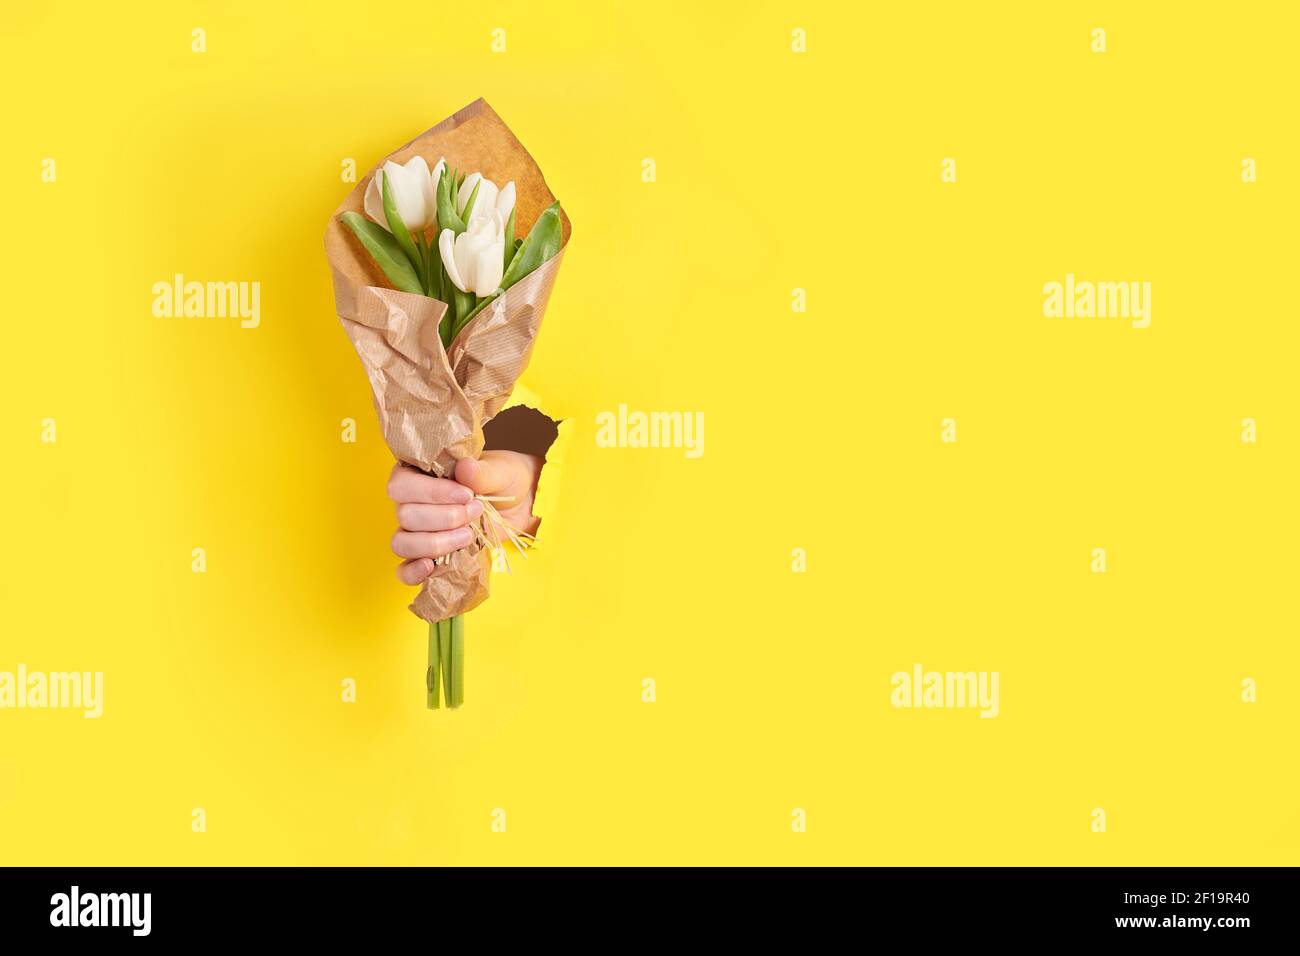 femme main tenant des tulipes blanches fleurs à travers le trou dans papier jaune Banque D'Images